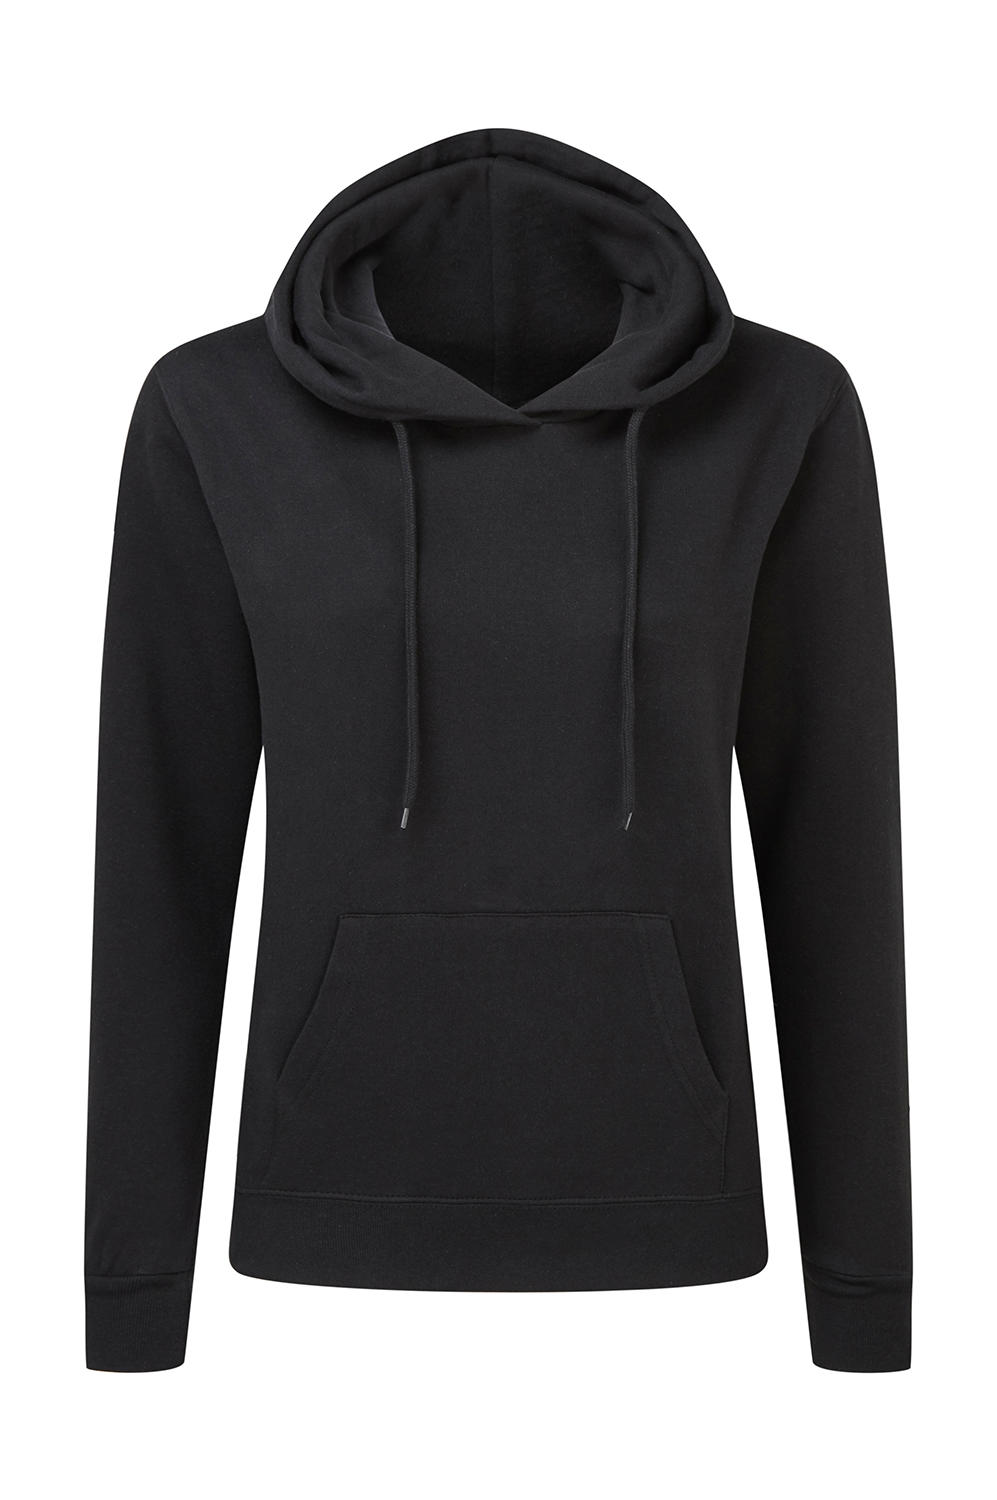  Ladies Hooded Sweatshirt in Farbe Black